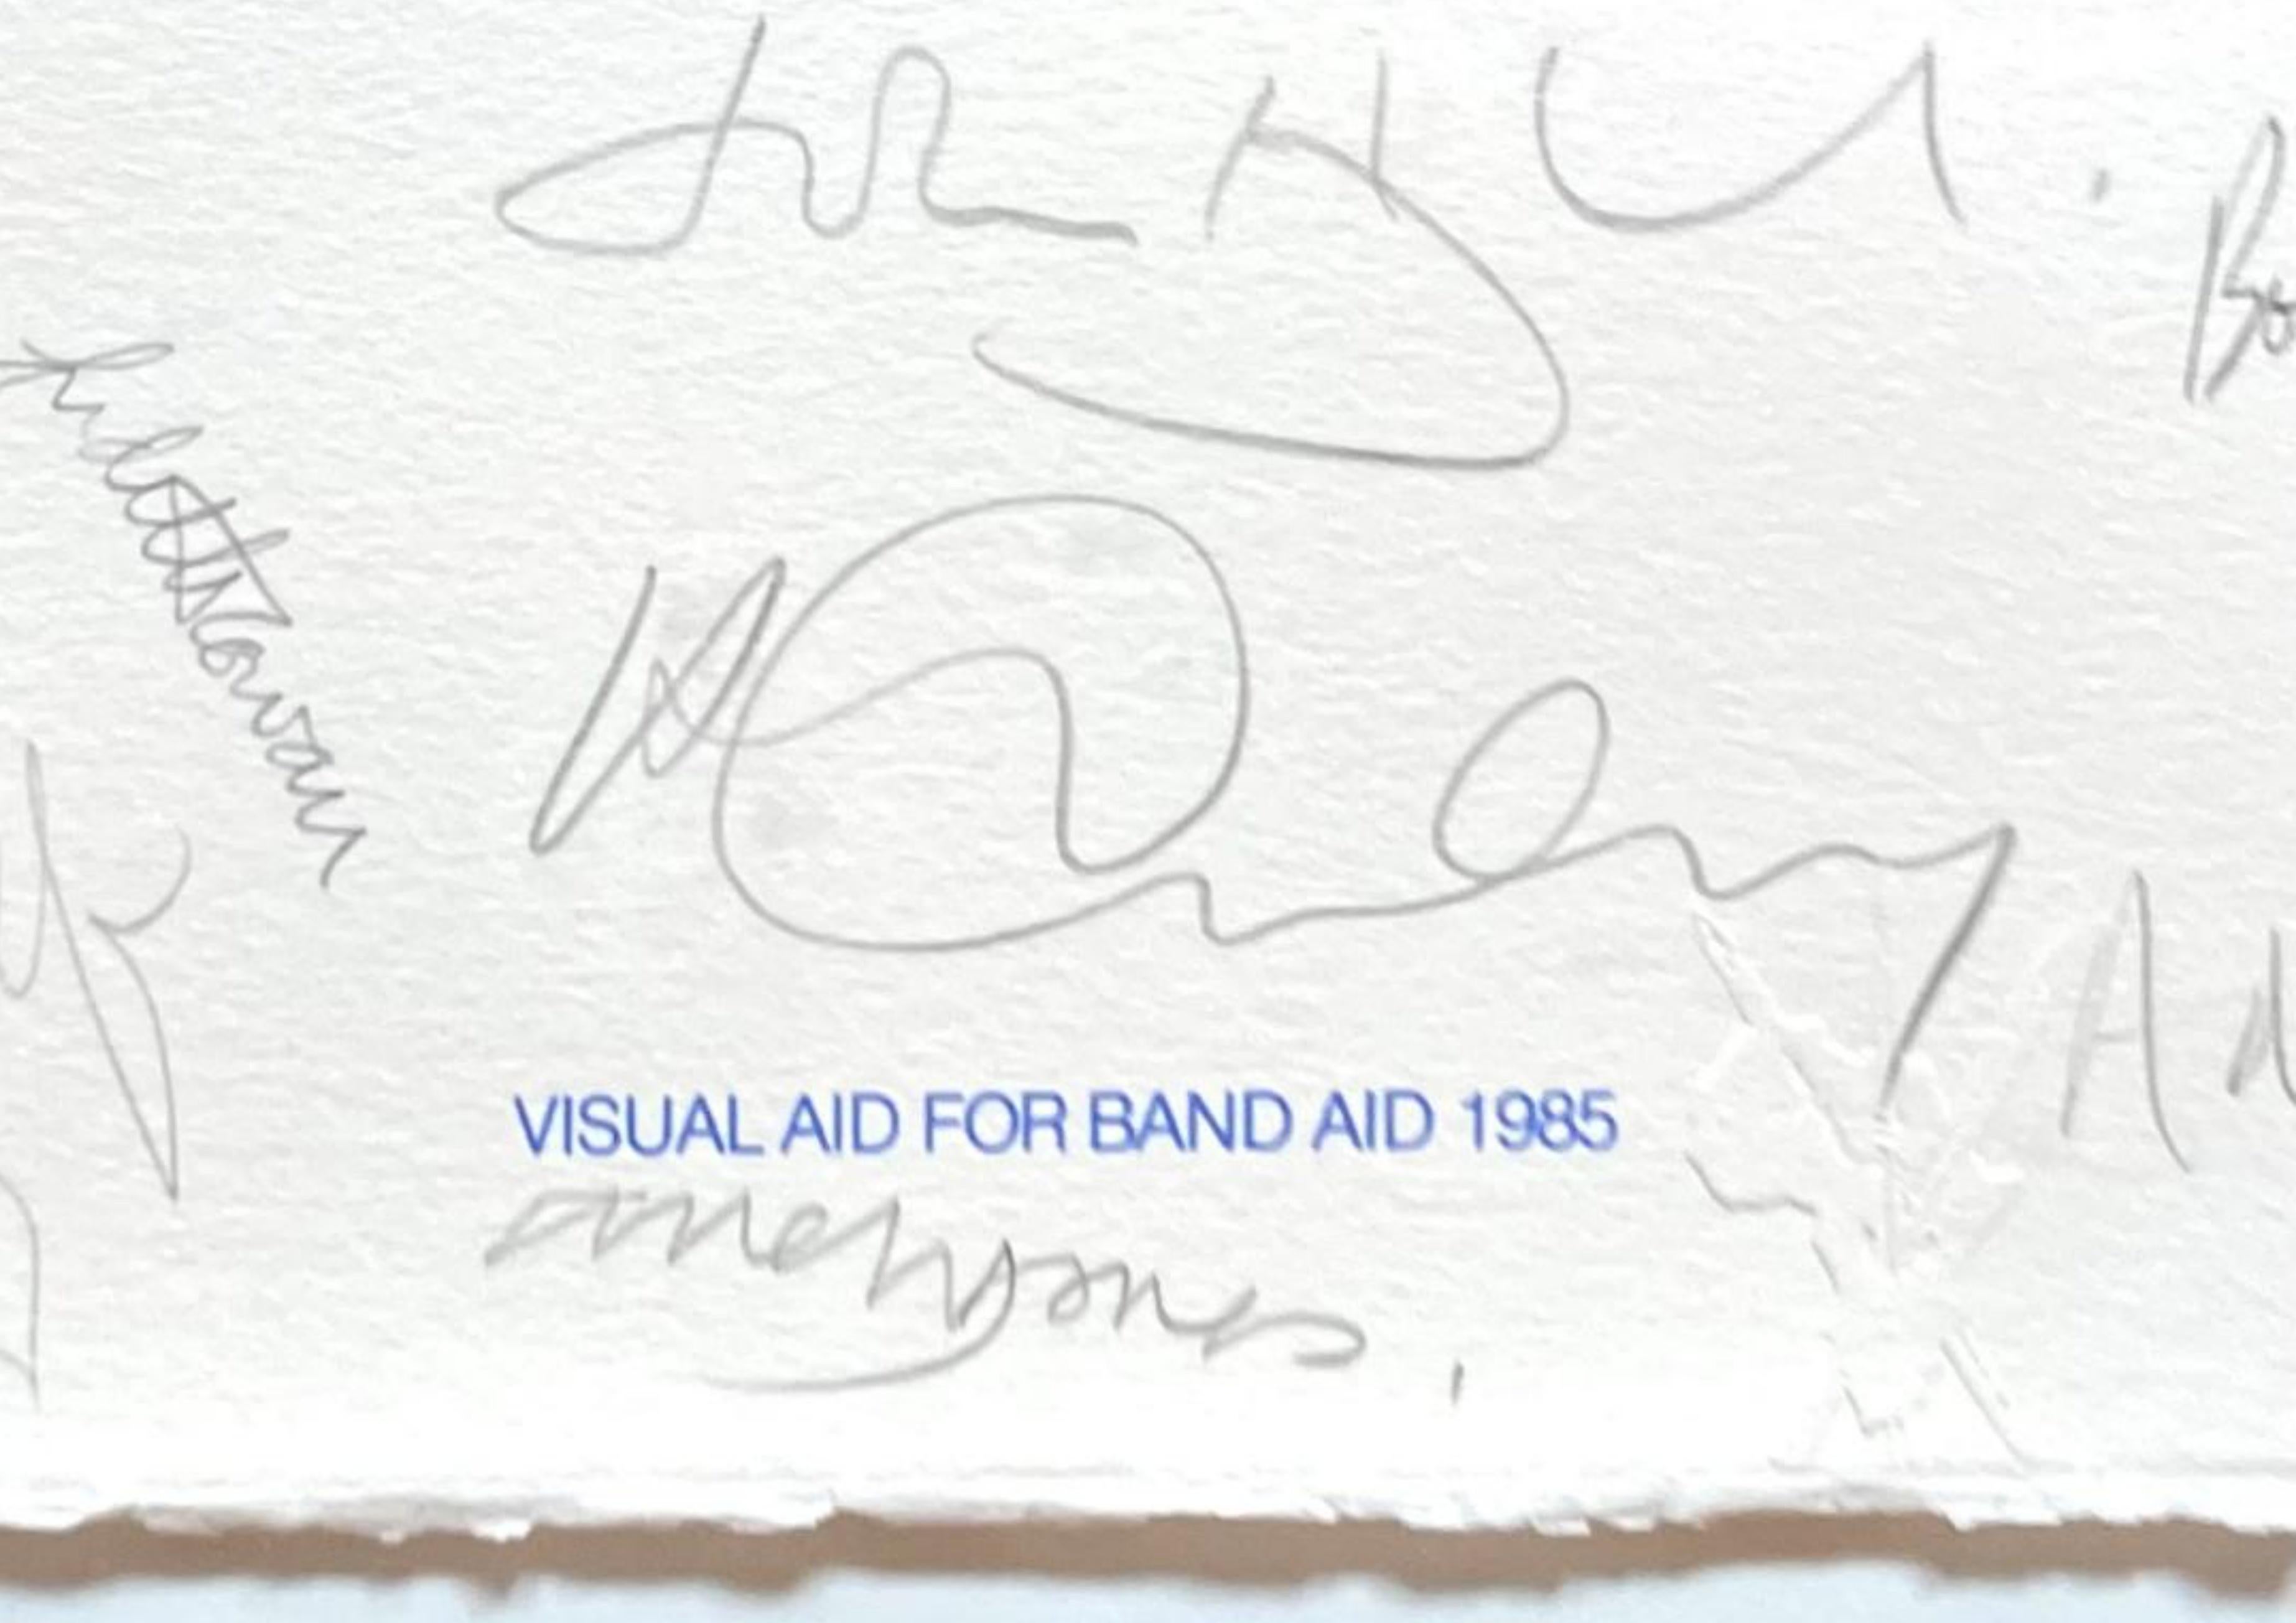 David Hockney, Bridget Riley, Joe Tilson, Howard Hodgkin, Peter Blake + 99 Künstler
Visual Aid for Band Aid - entworfen, handsigniert und kommentiert von 104 renommierten Künstlern, mit offiziell signiertem COA, 1985
Großer Olor-Siebdruck auf Velin